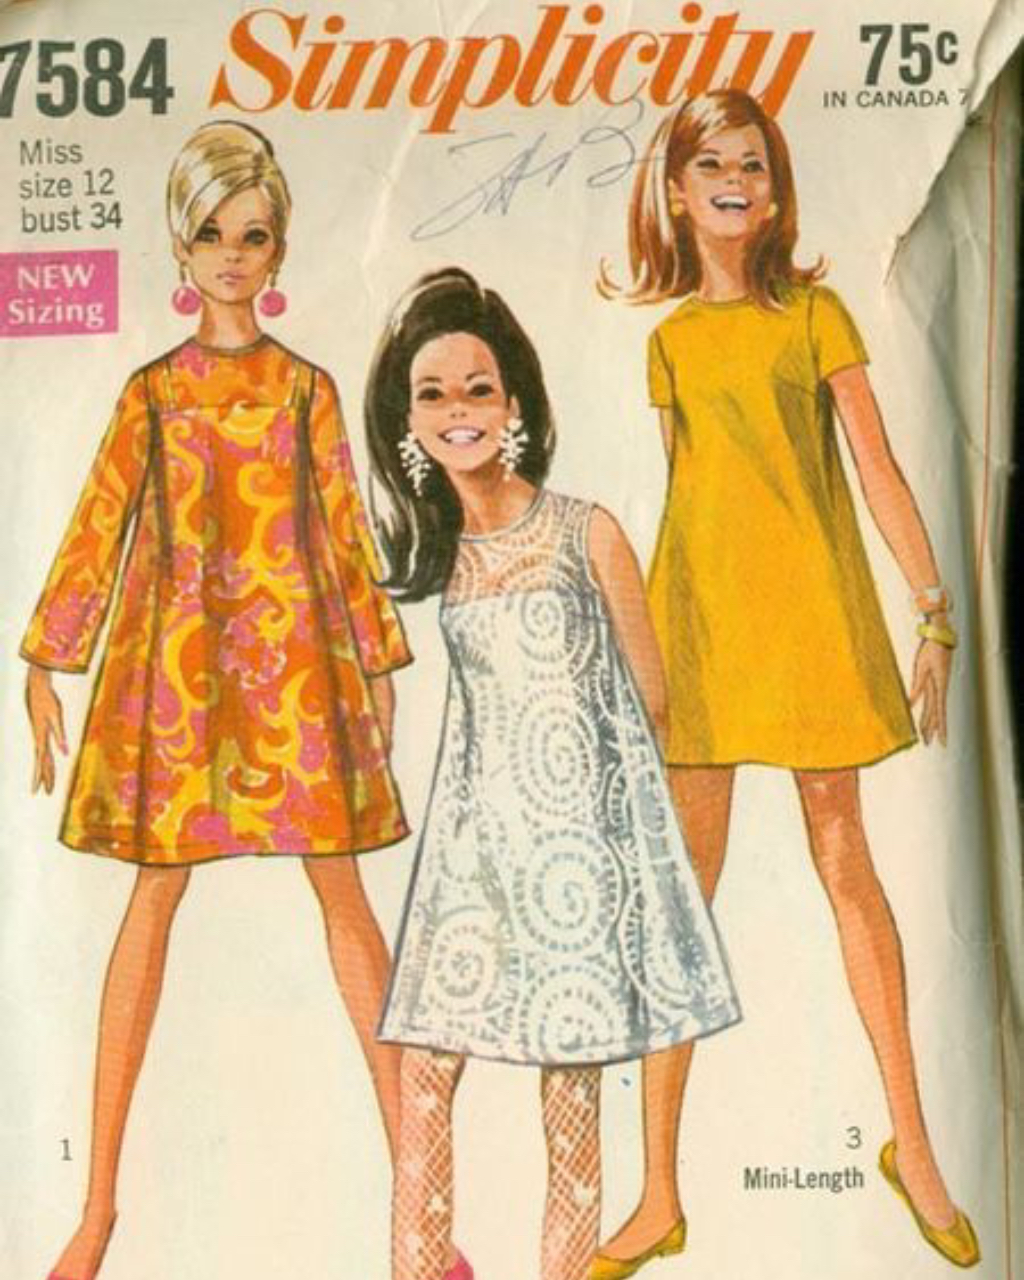 Explaining 1960's Fashion